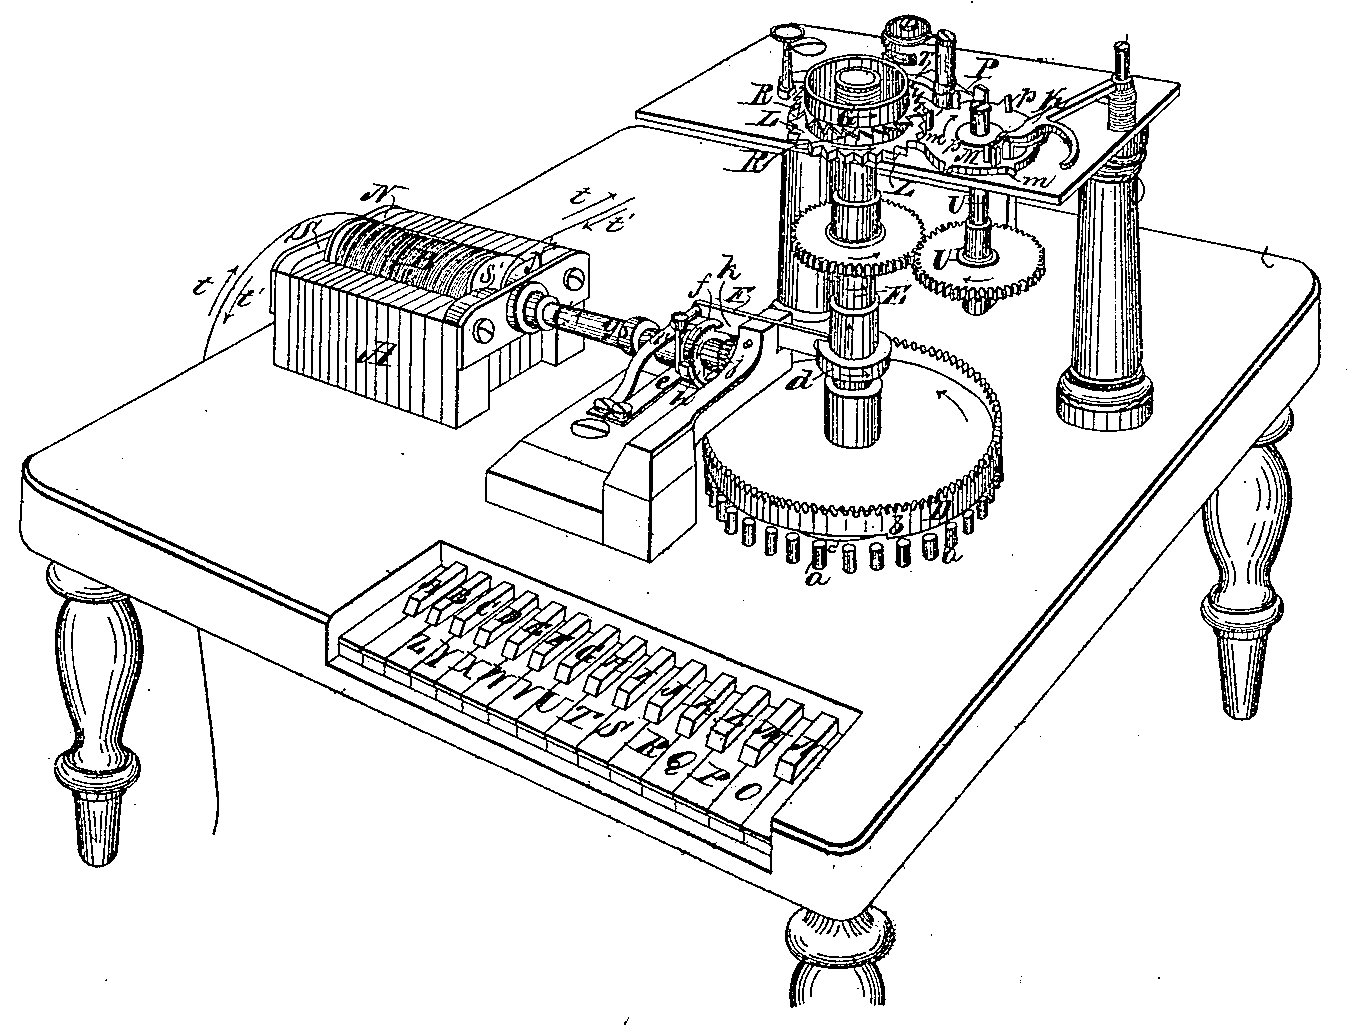 ウェスタン・ユニオン・テレグラフ社の『印刷電信機』（U.S. Patent No. 26003）